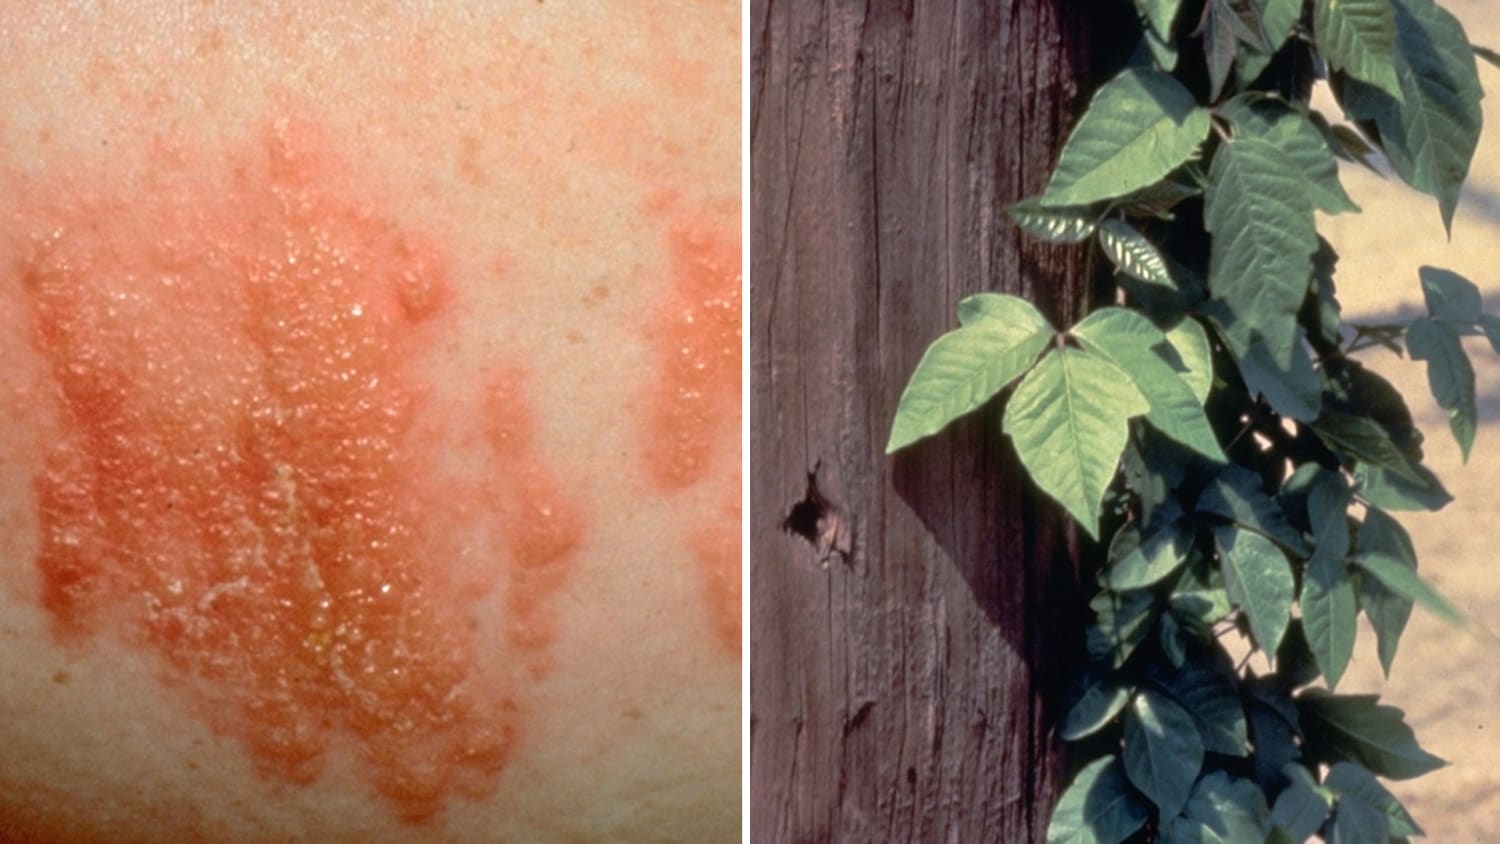 Poison Ivy Rash Treatment & Pictures of Poisonous Plants